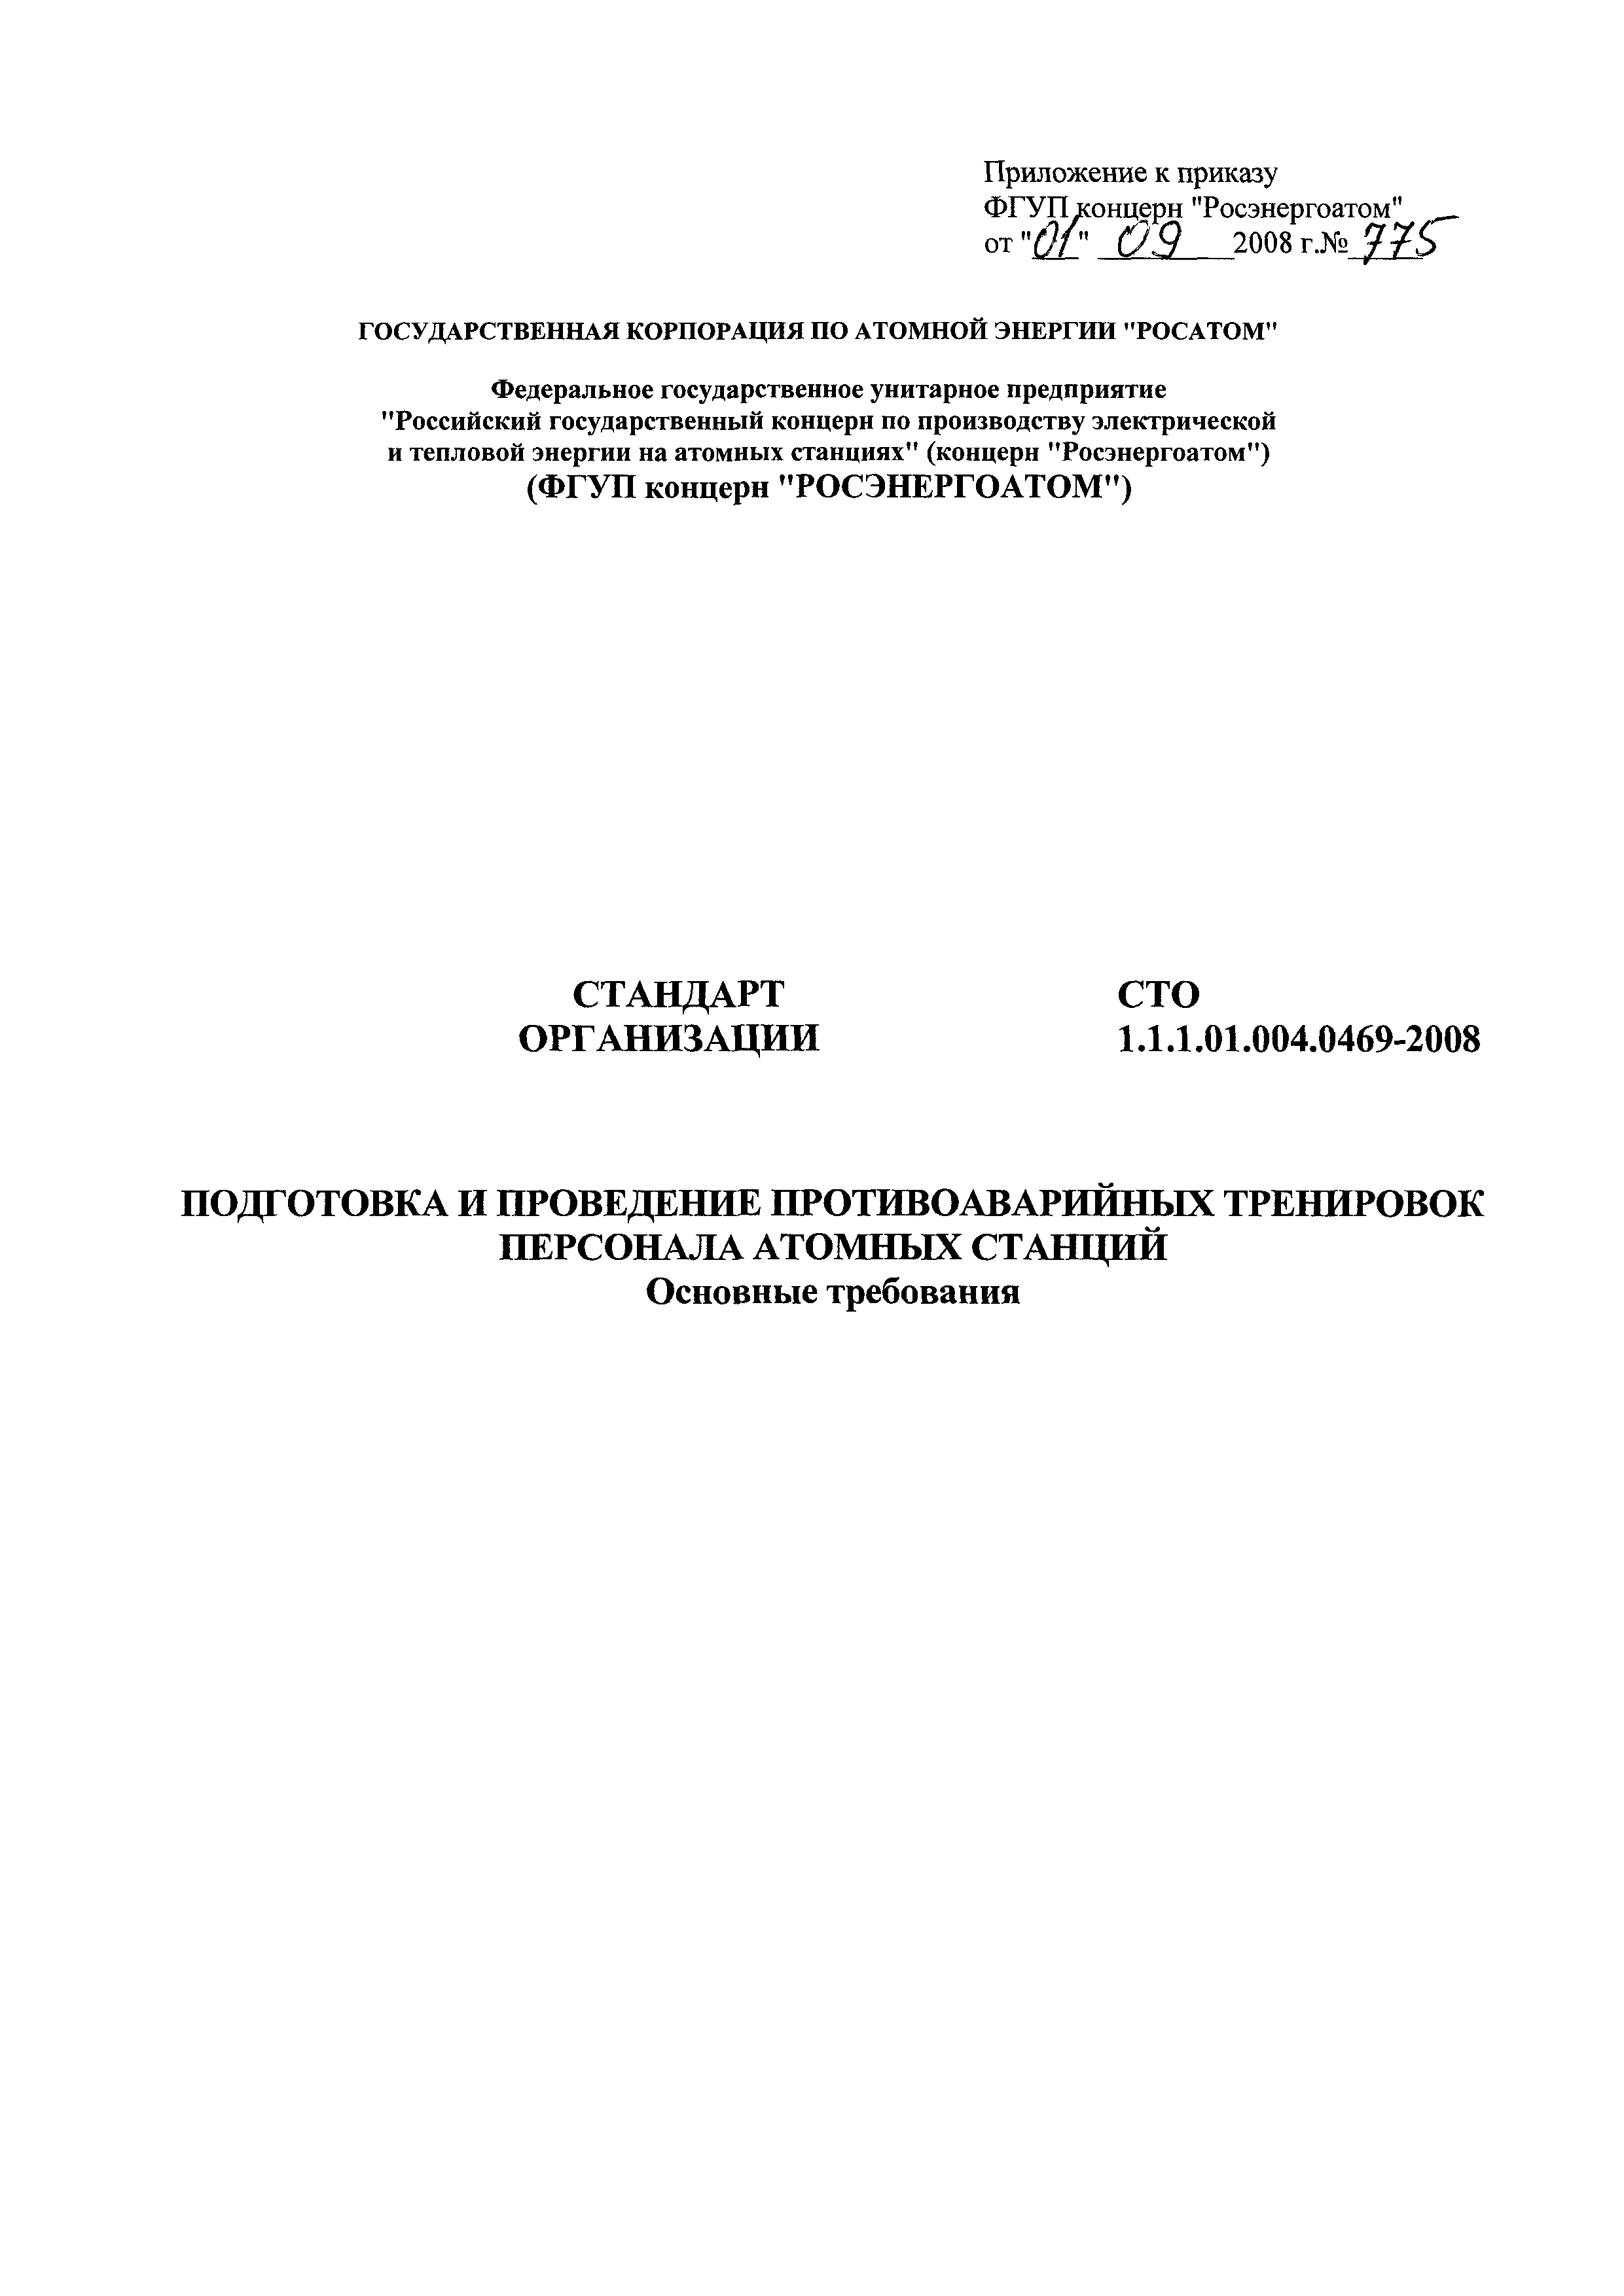 СТО 1.1.1.01.004.0469-2008